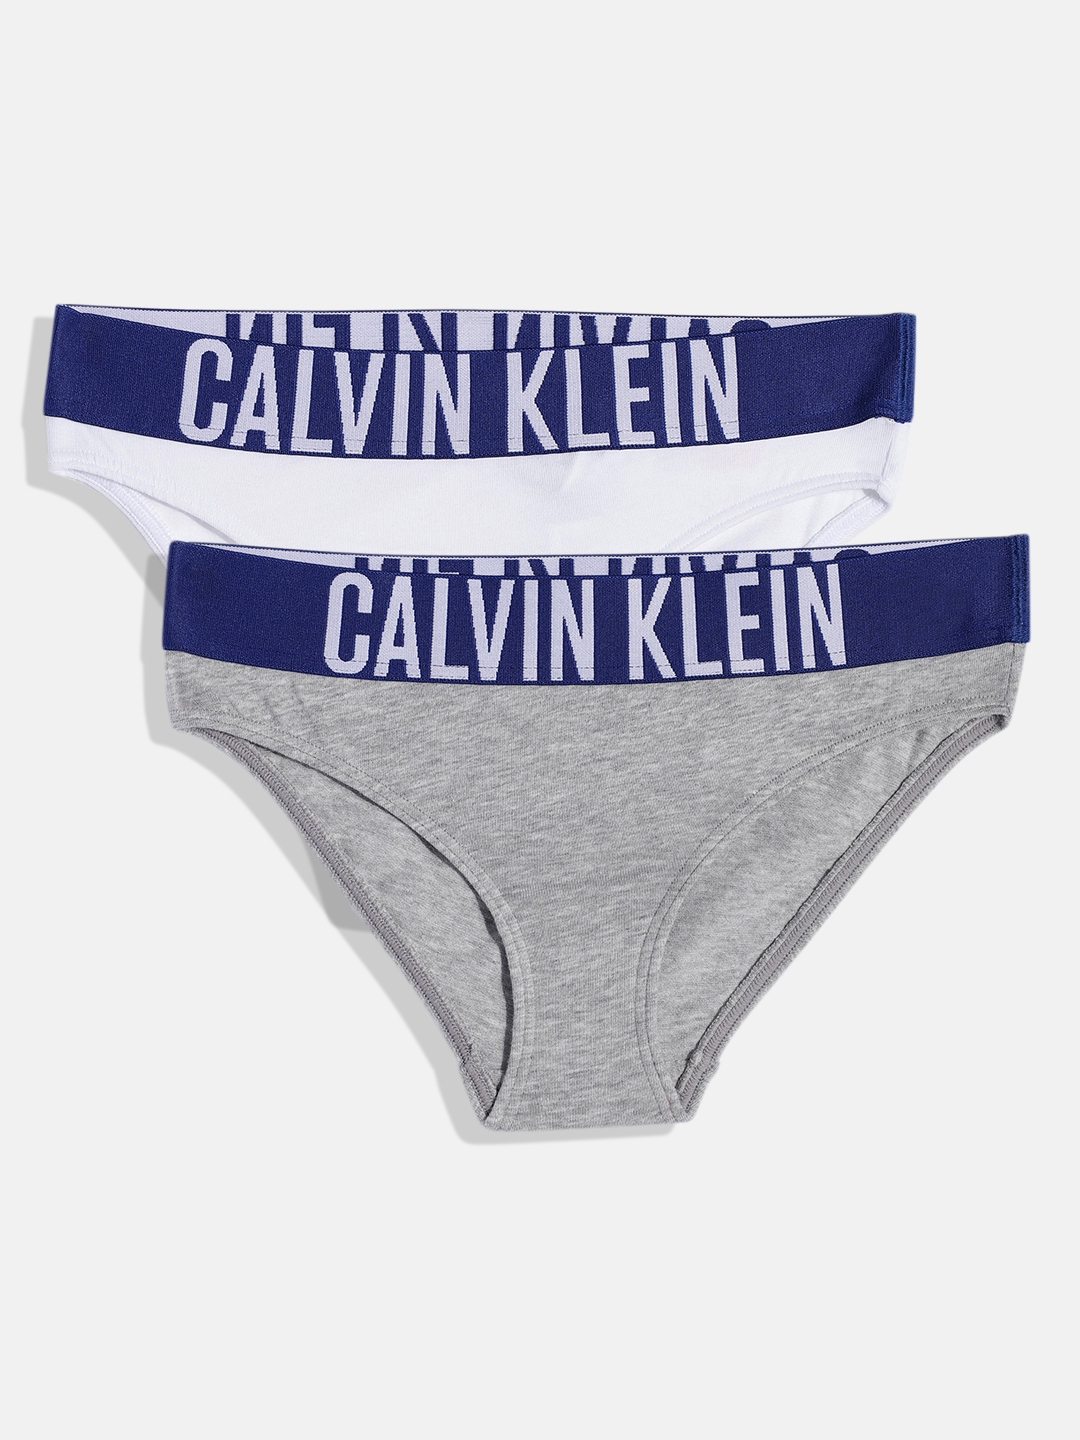 Buy Calvin Klein Underwear Mid Rise Solid Bikini Panties - Pack Of 6